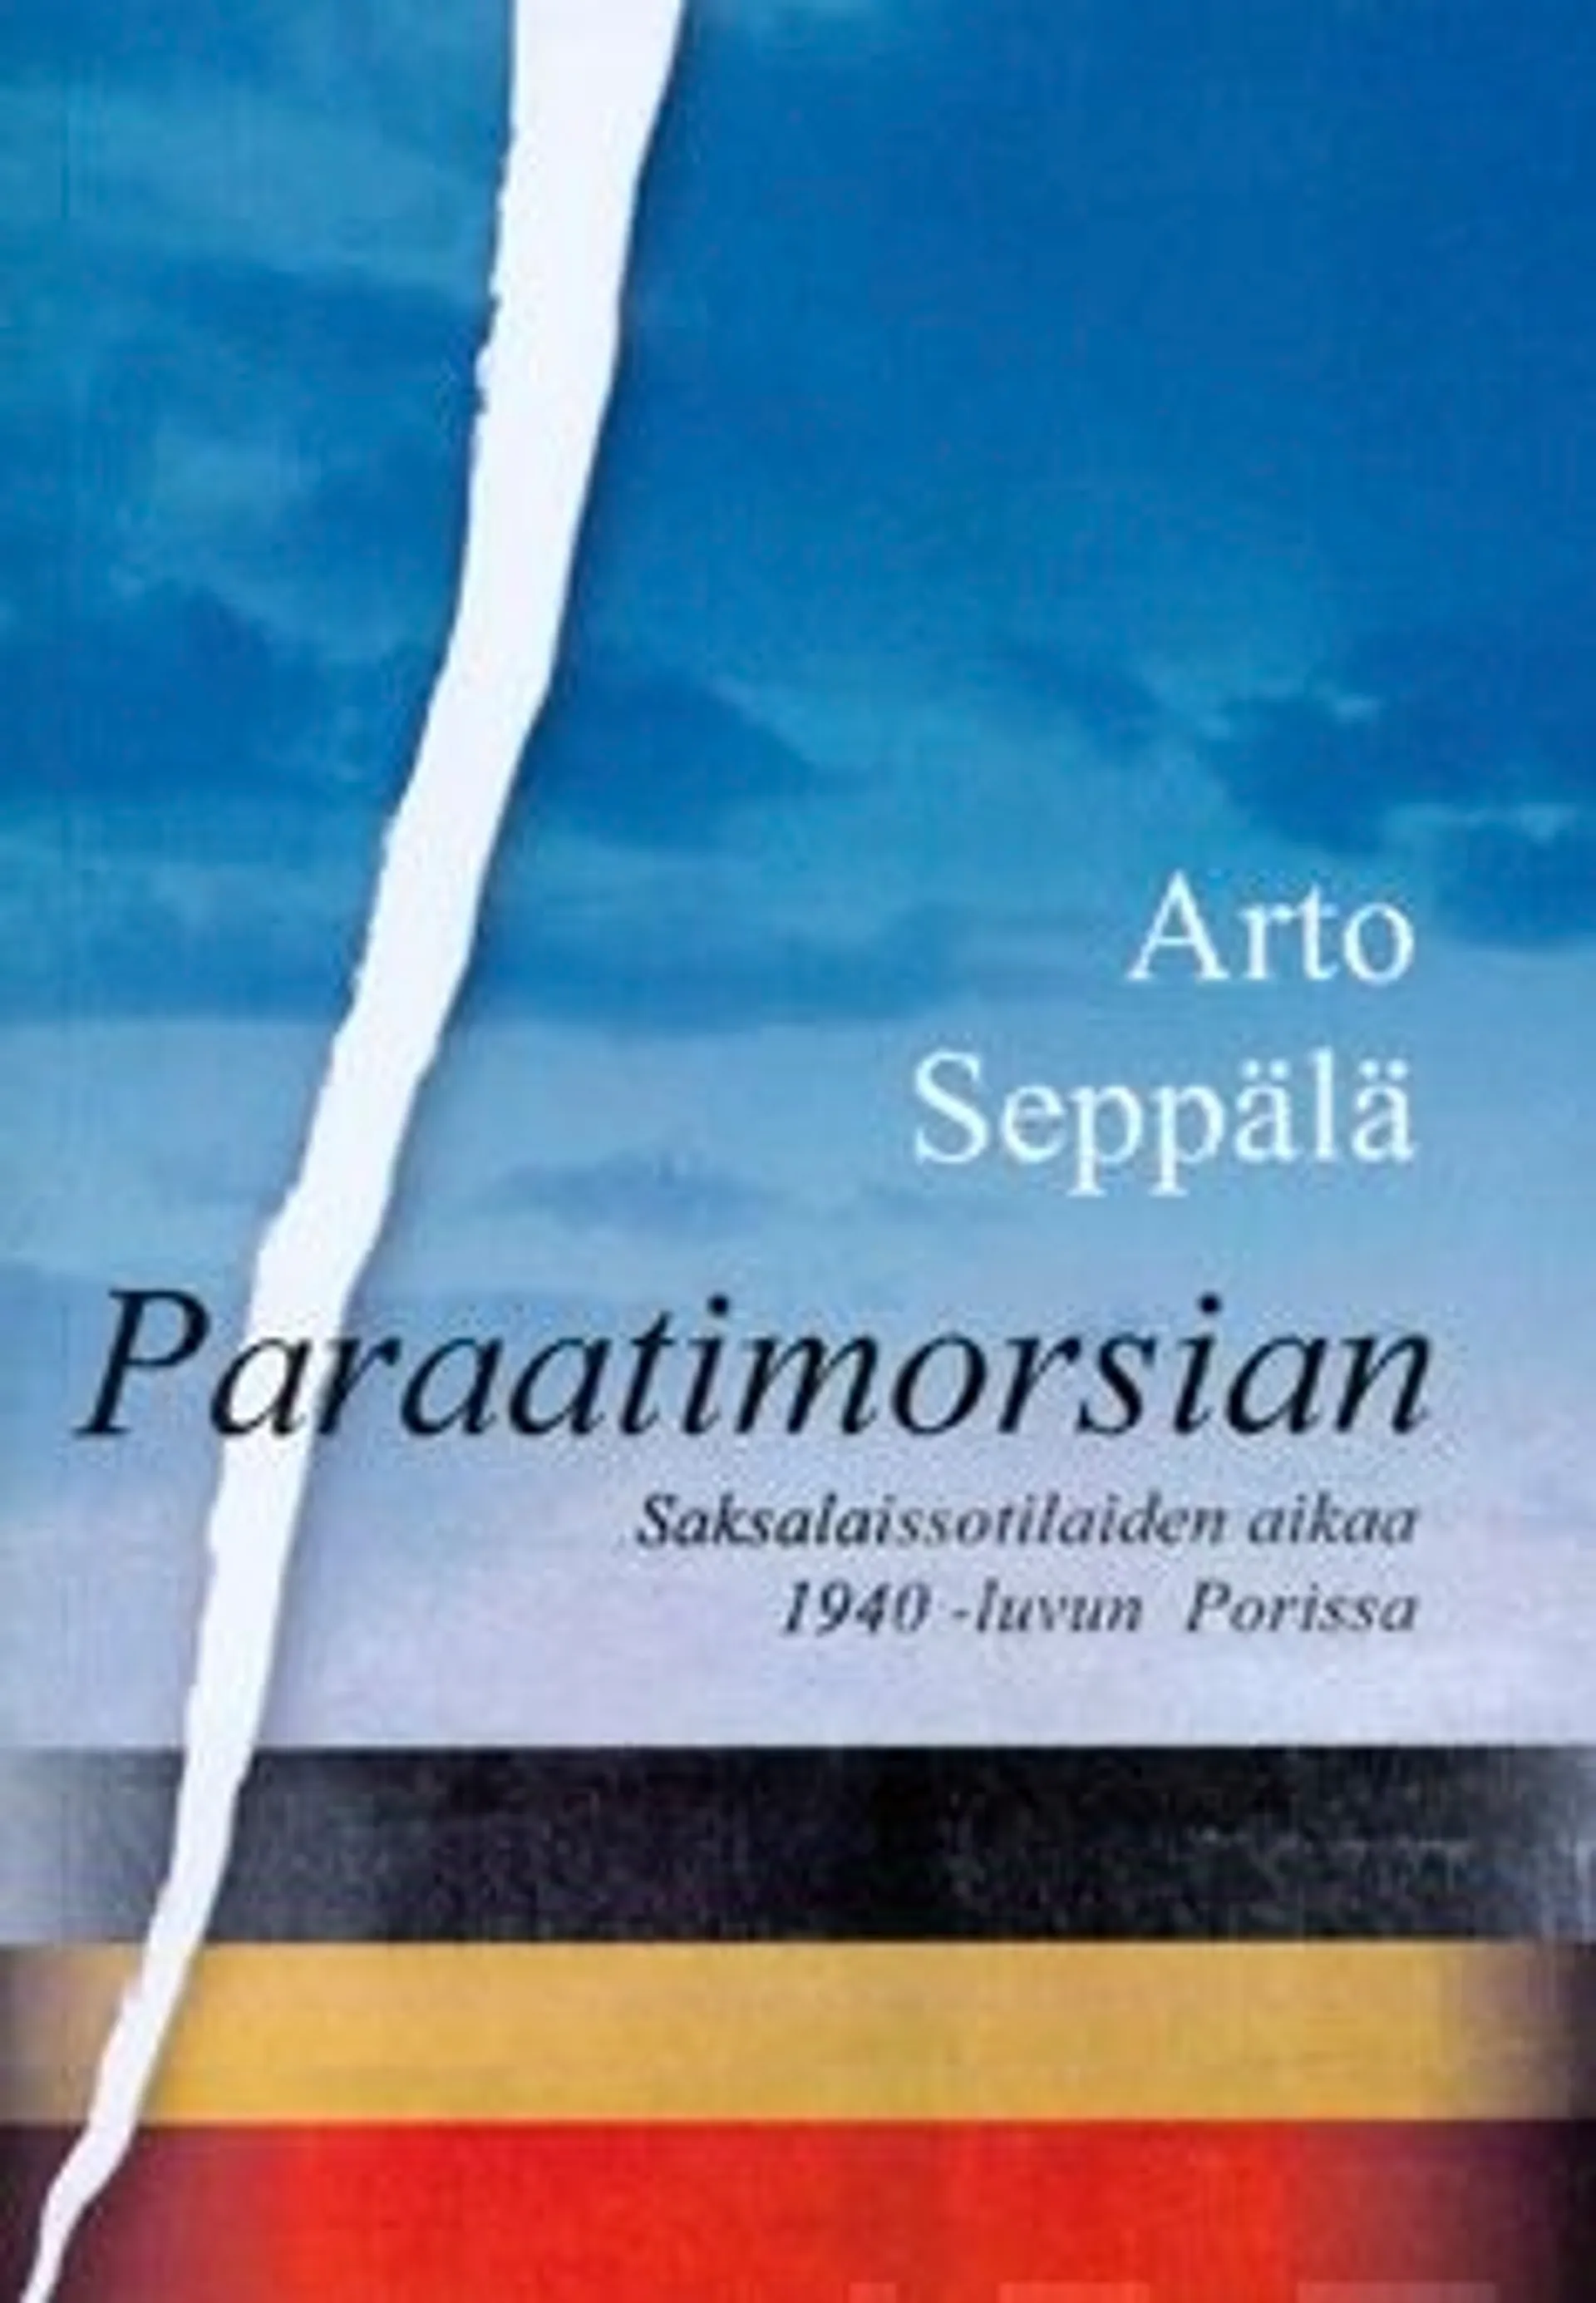 Seppälä, Paraatimorsian